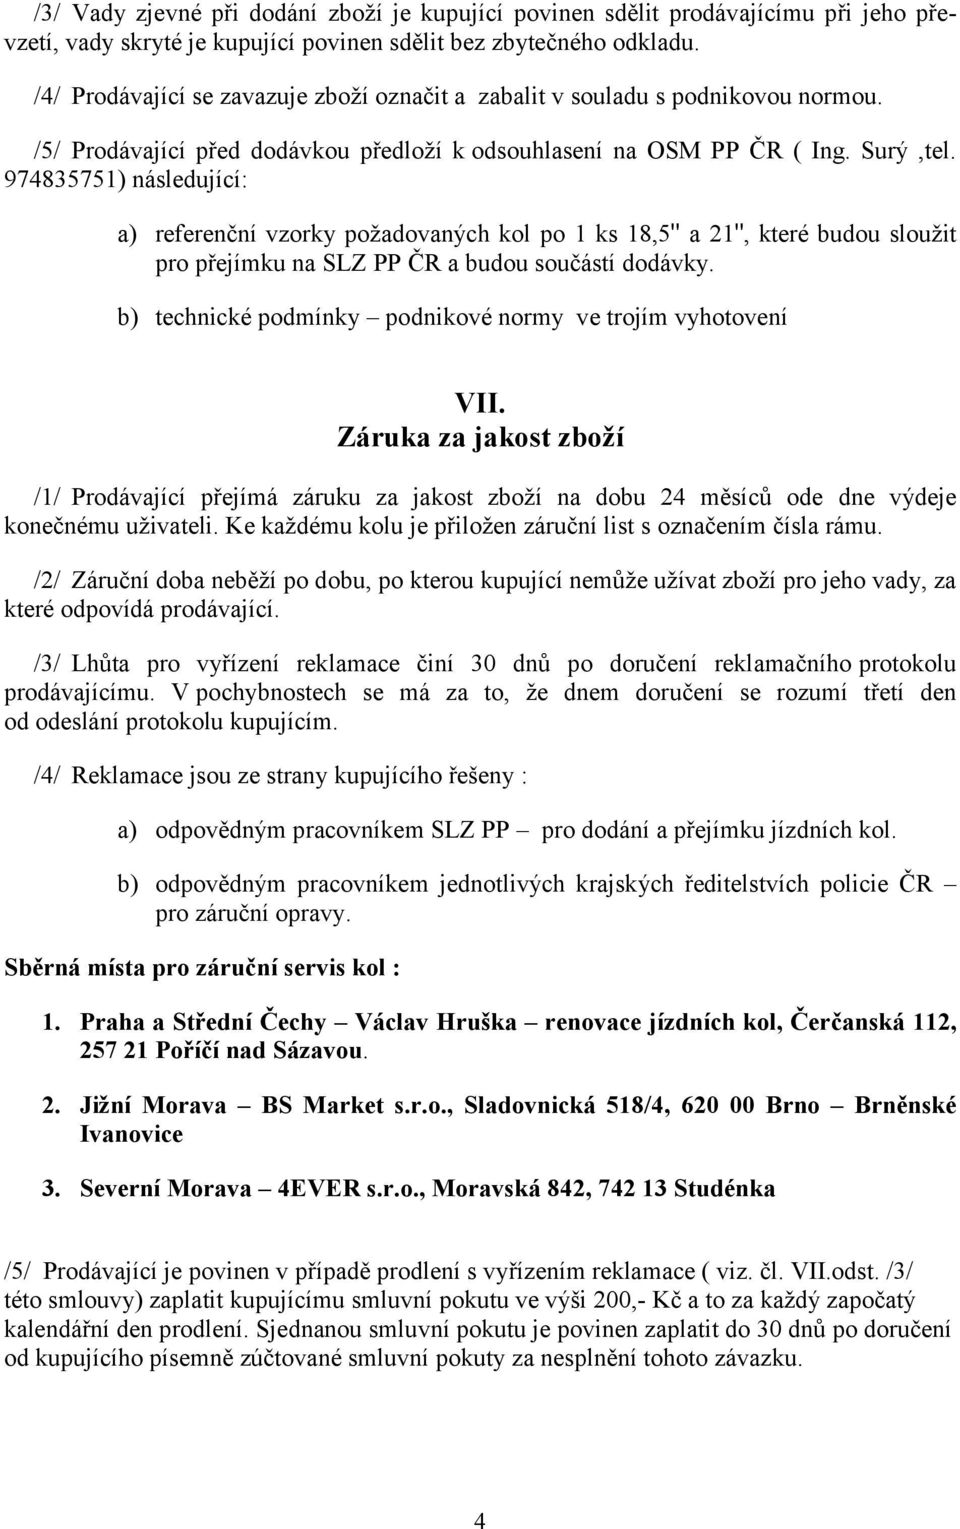 974835751) následující: a) referenční vzorky požadovaných kol po 1 ks 18,5" a 21", které budou sloužit pro přejímku na SLZ PP ČR a budou součástí dodávky.